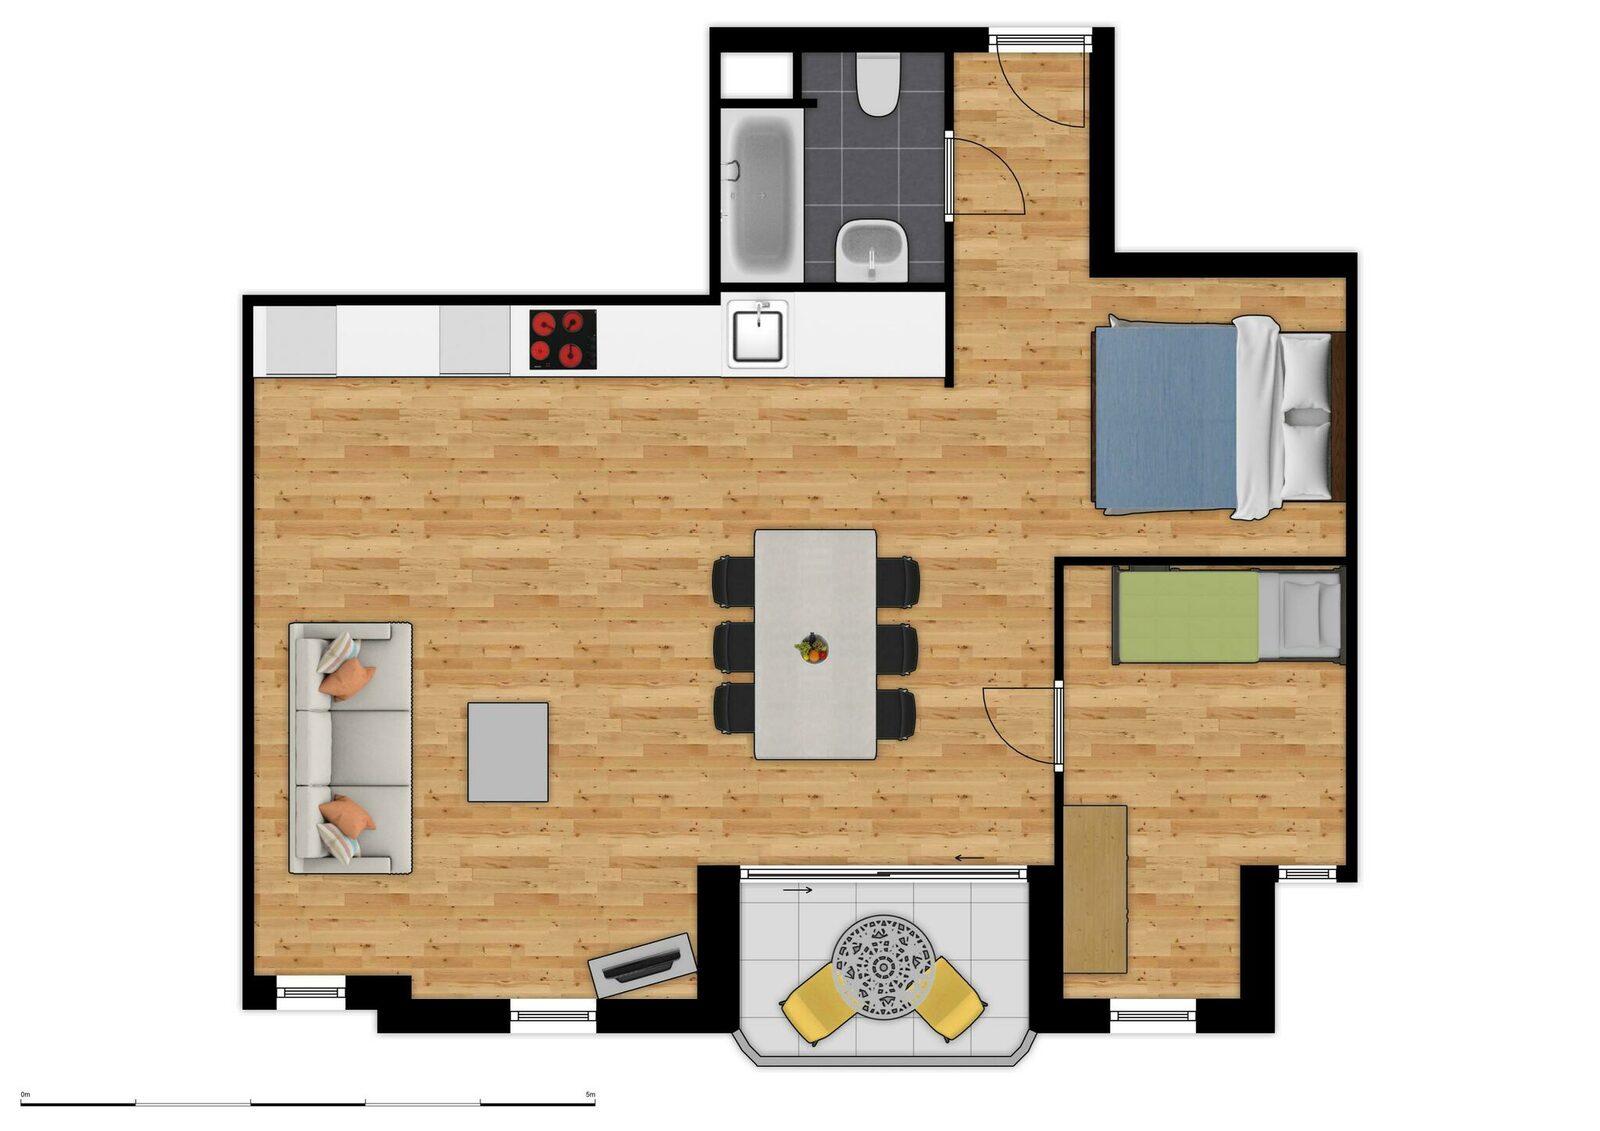 Comfort Suite - 6p | Bedroom - Sleeping corner - Sofa bed | Balcony - Sea view